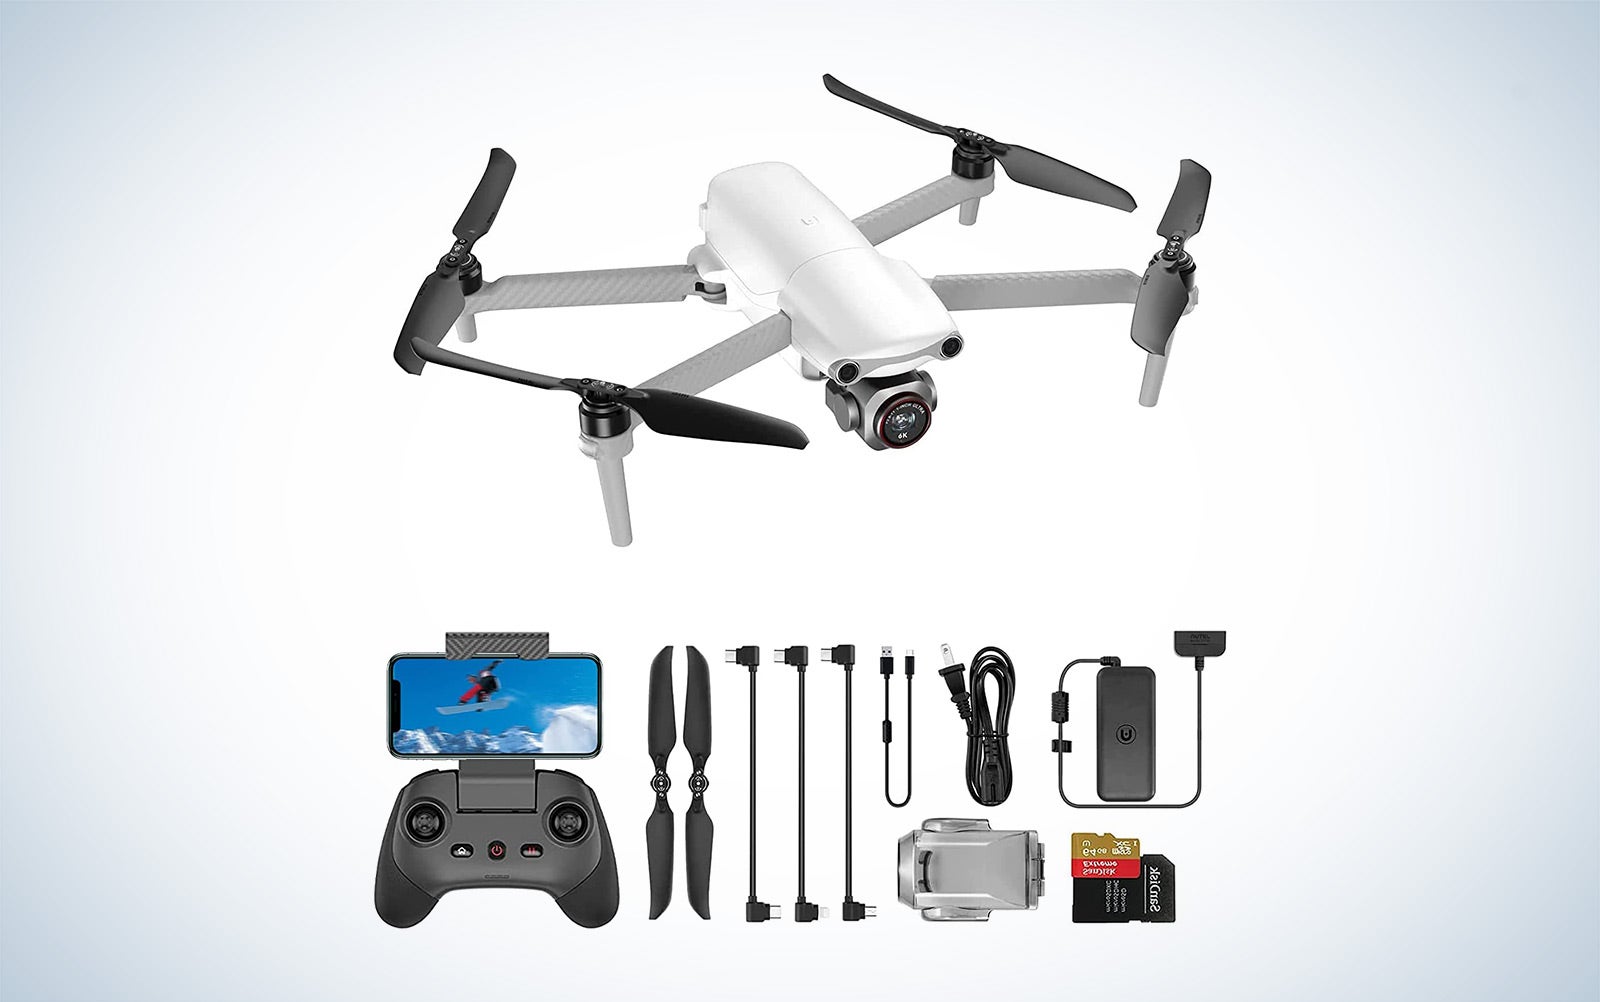 Autel Evo Lite+ drone